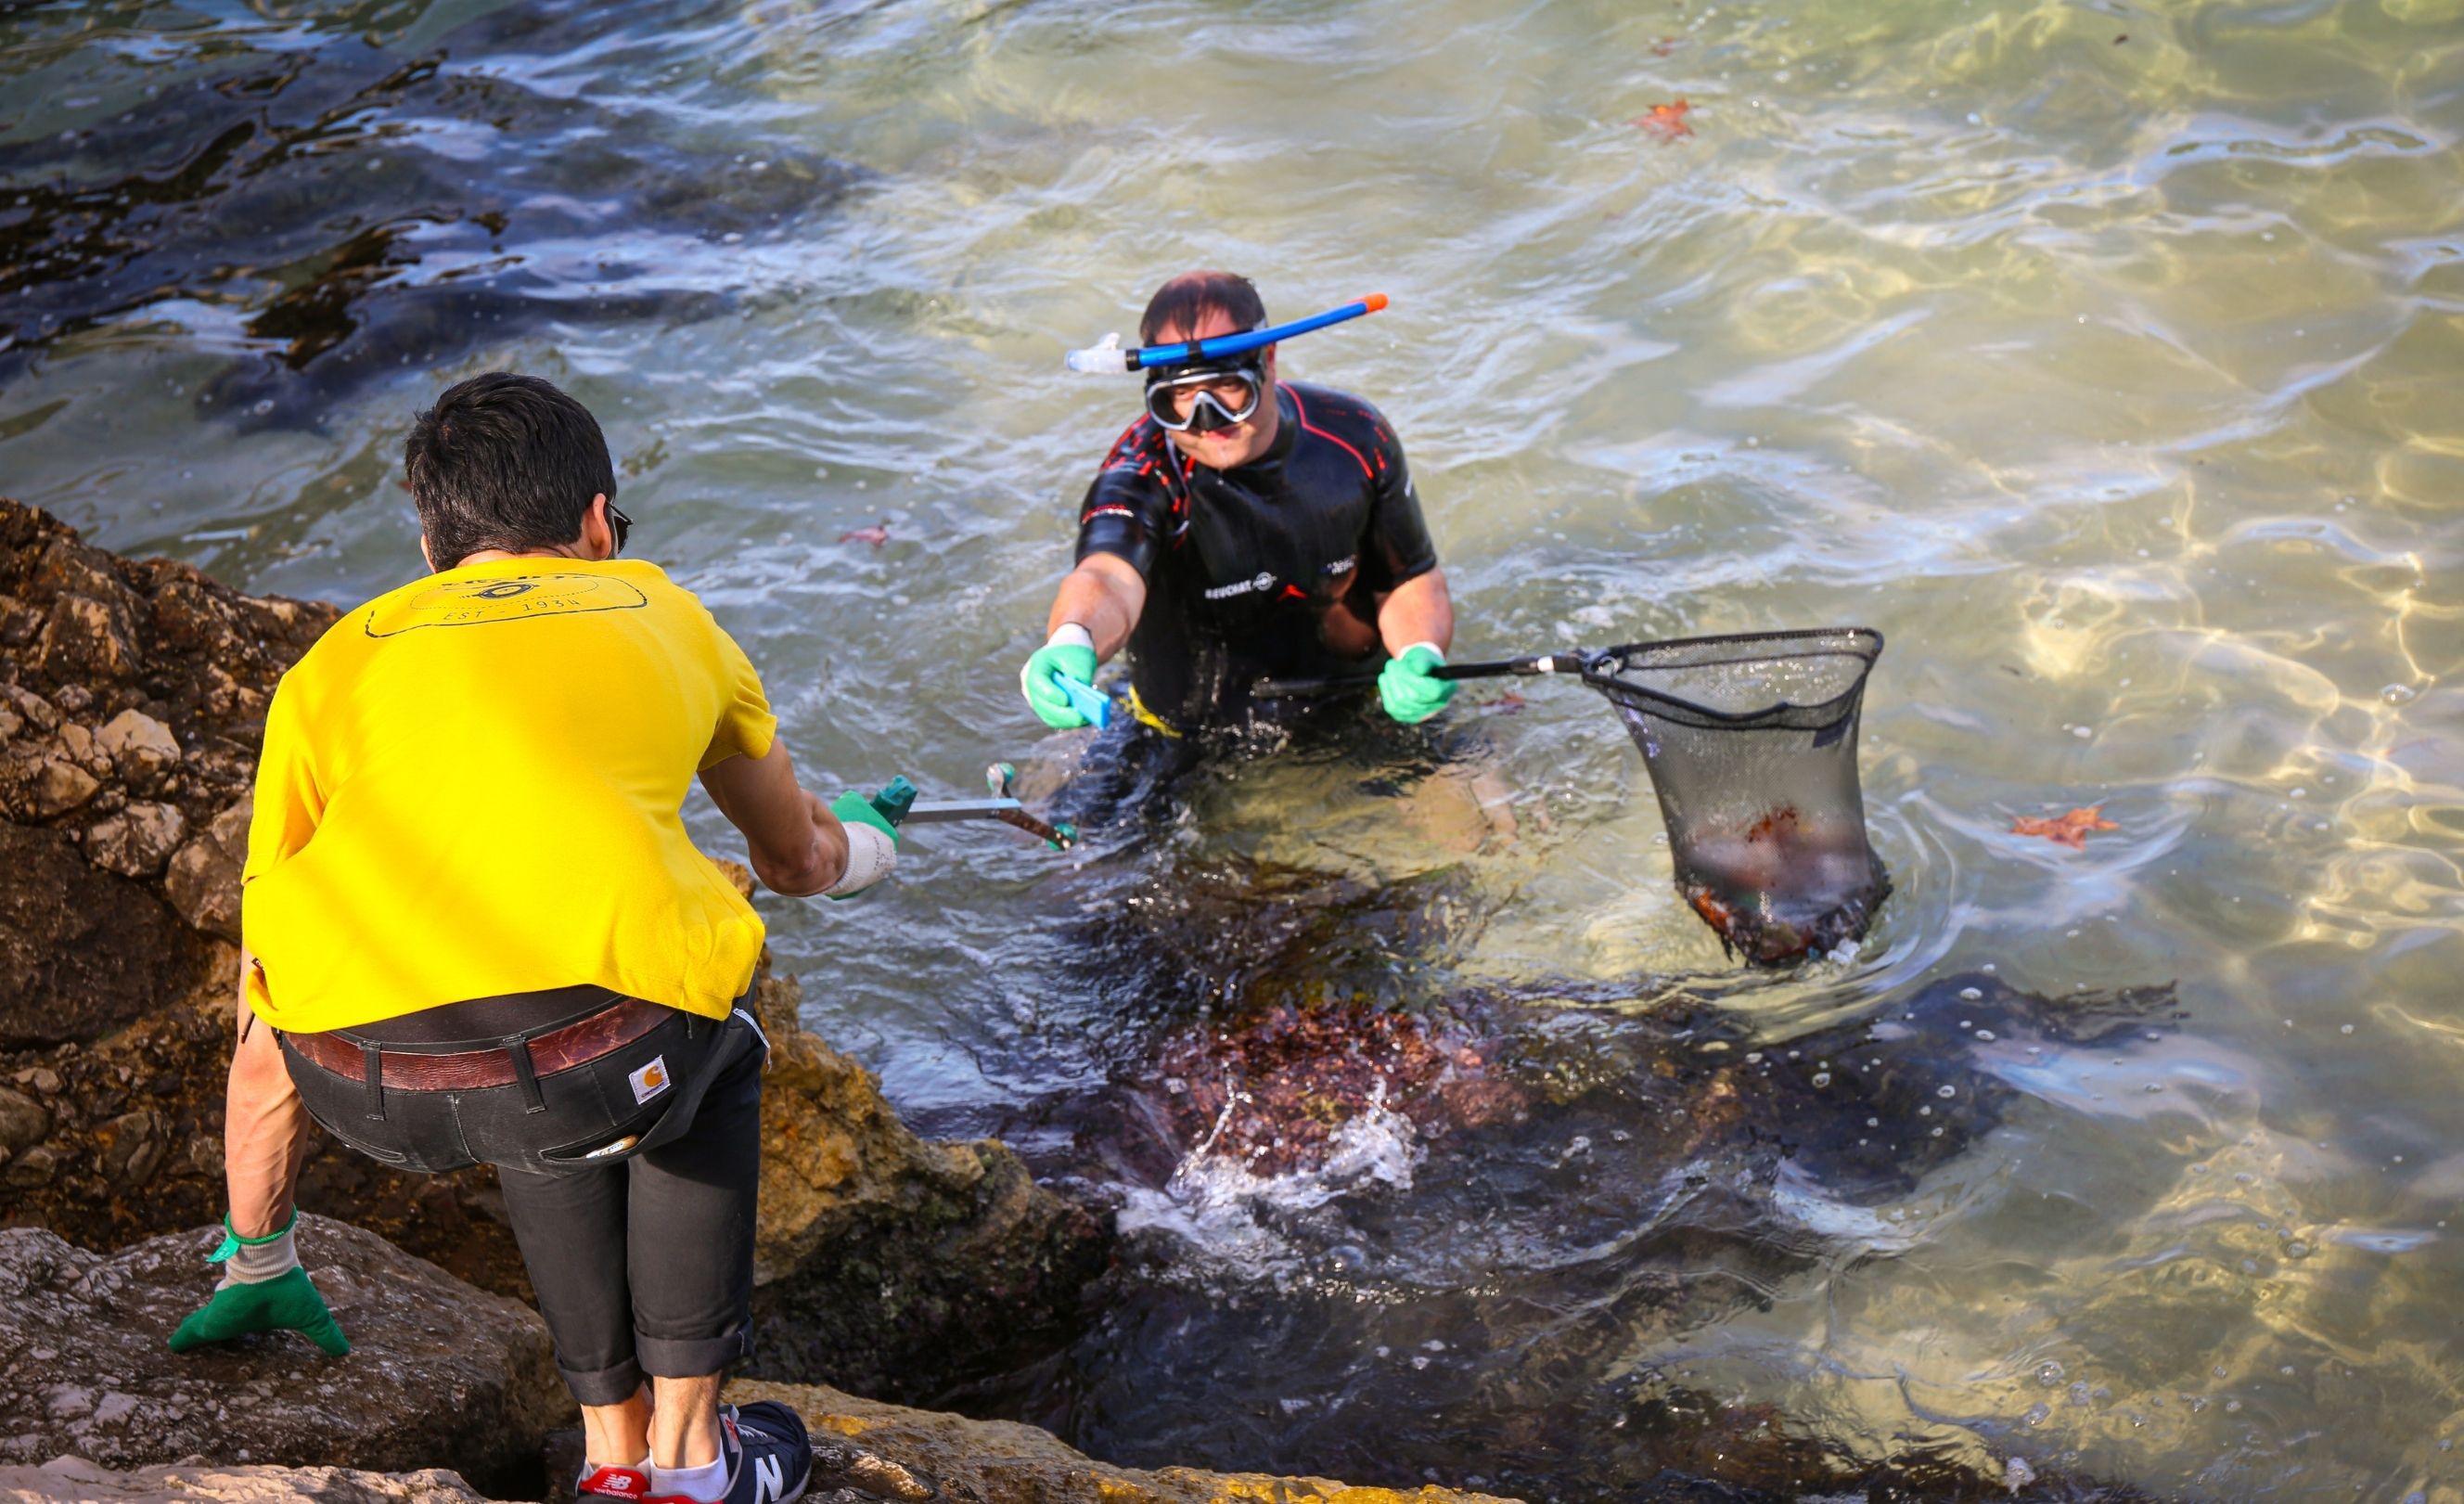 Ramassage des déchets en mer au Catalans par un plongeur Beuchat